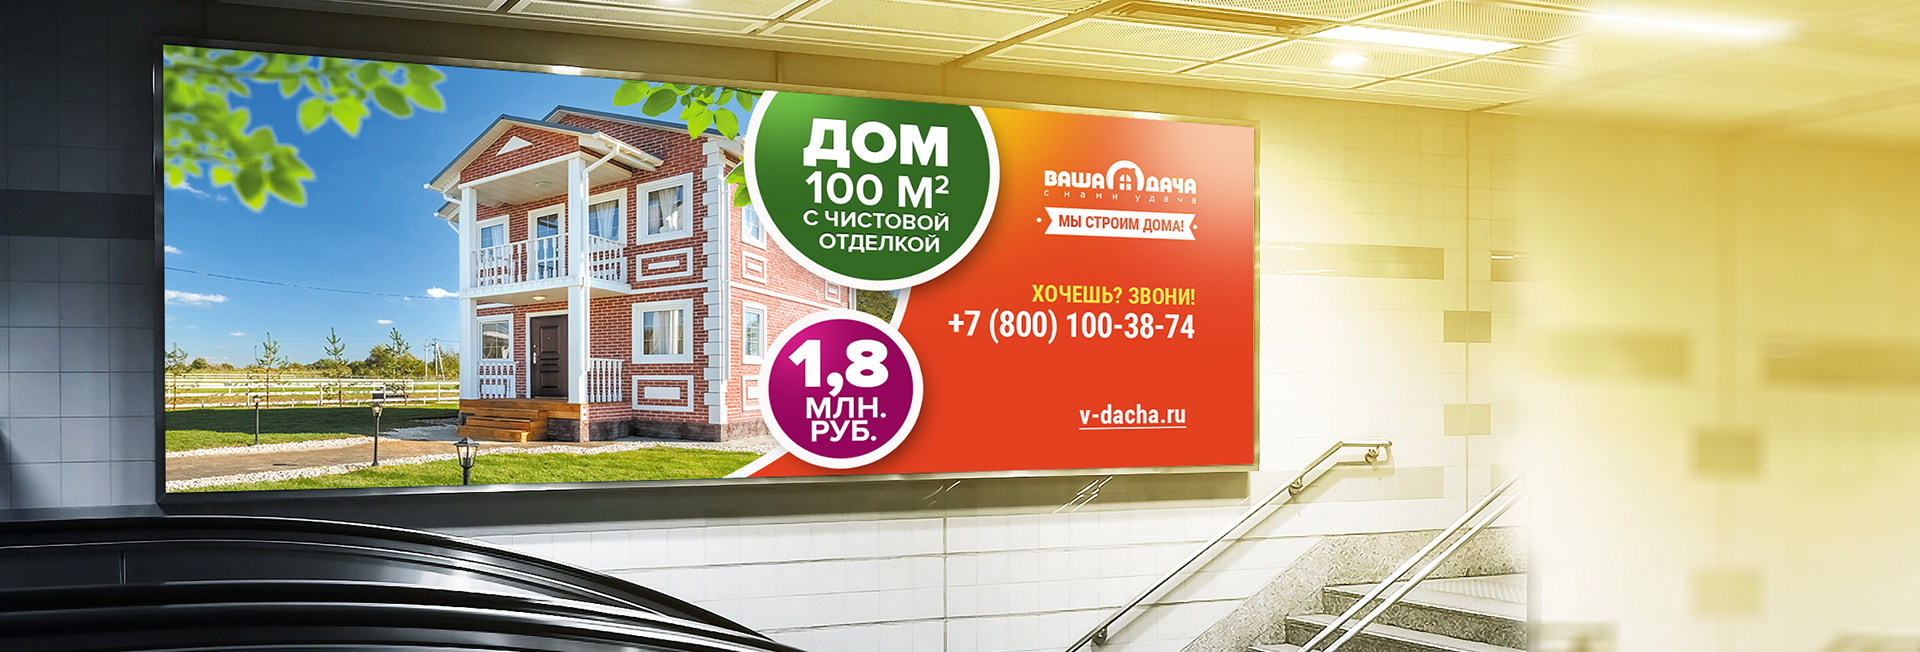 Дизайн рекламного билборда. Рекламные щиты. Ваша дача (www.v-dacha.ru).